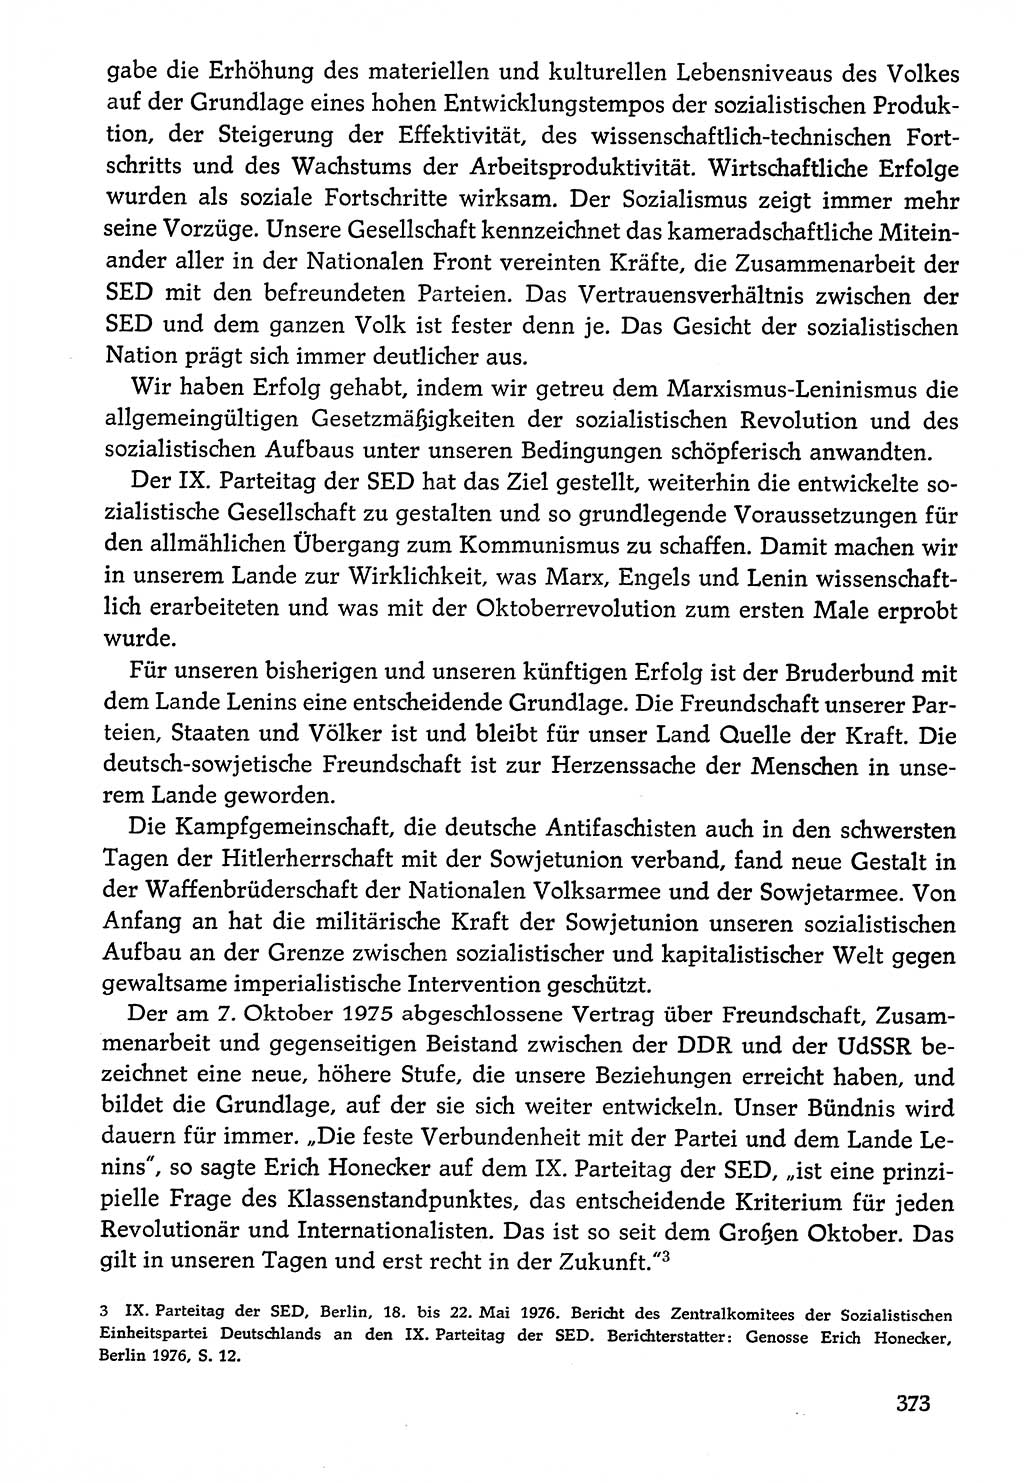 Dokumente der Sozialistischen Einheitspartei Deutschlands (SED) [Deutsche Demokratische Republik (DDR)] 1976-1977, Seite 373 (Dok. SED DDR 1976-1977, S. 373)